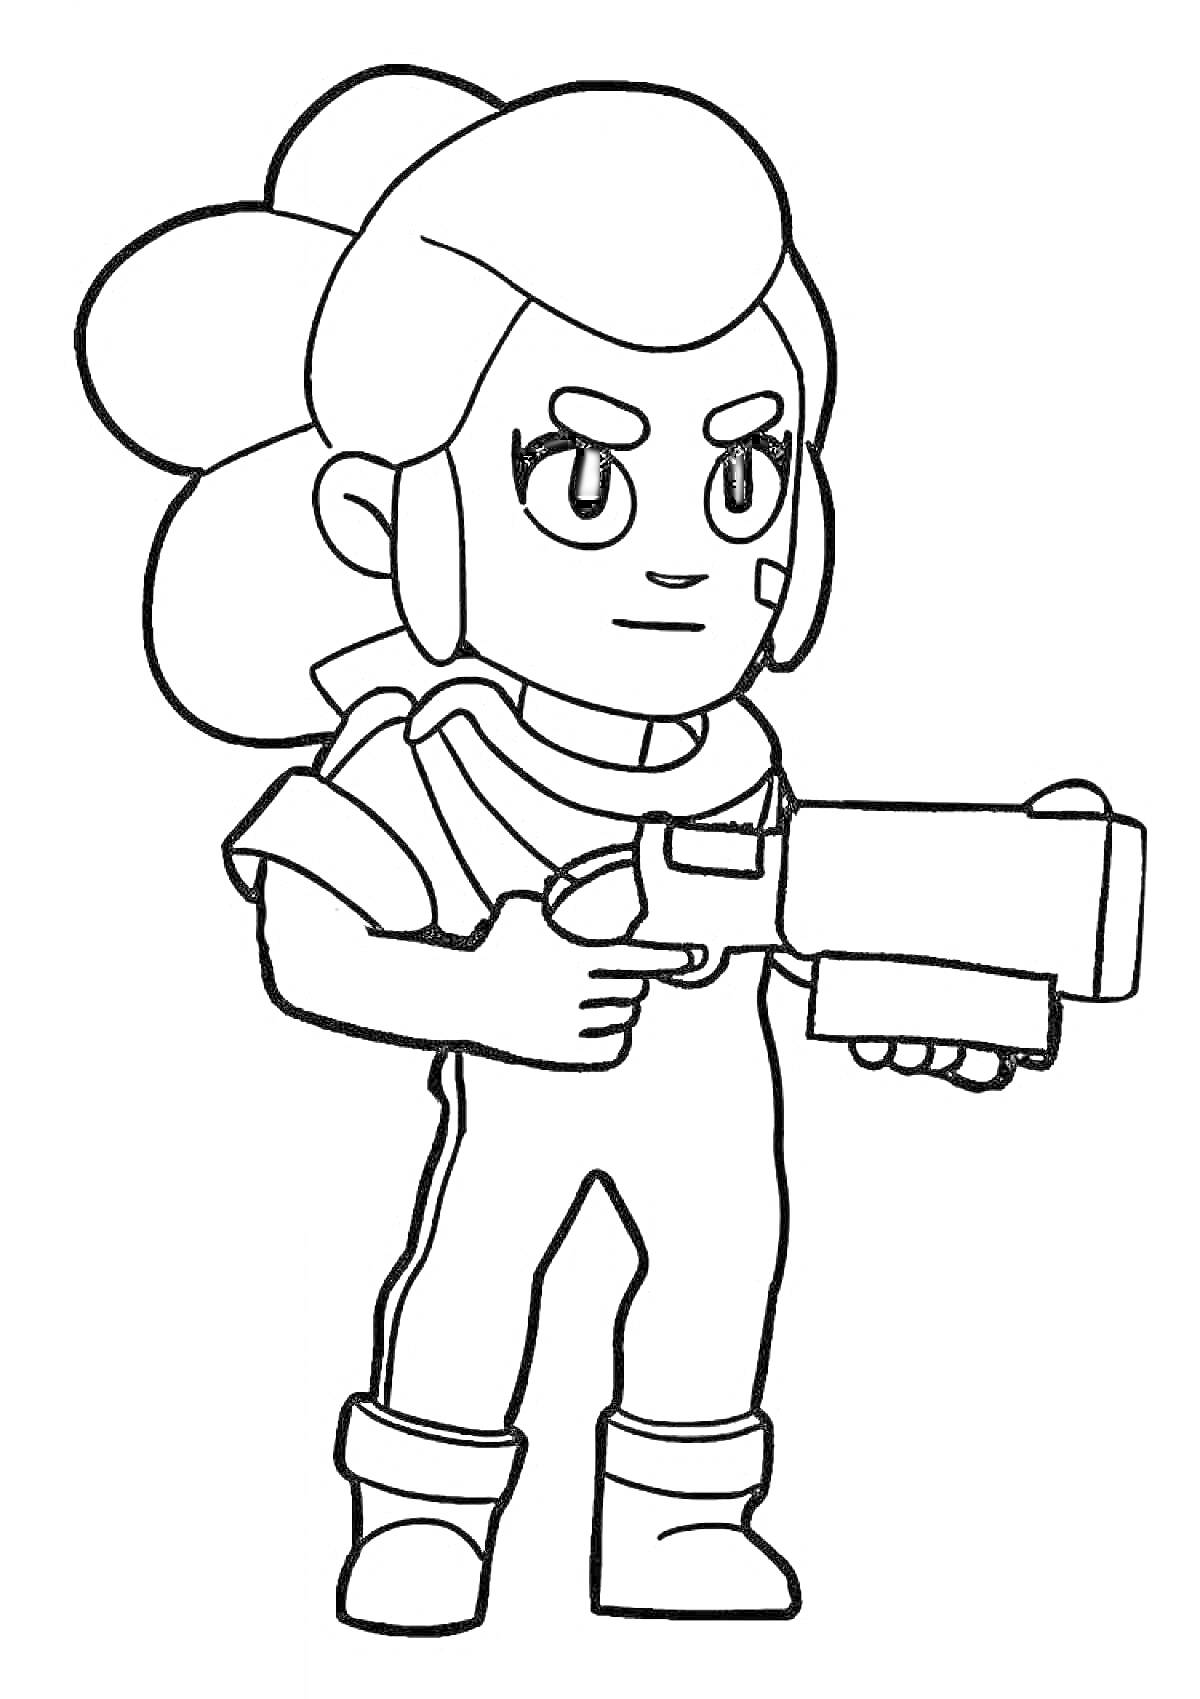 Раскраска Раскраска с персонажем шутом в костюме, держащим в руках крупное оружие